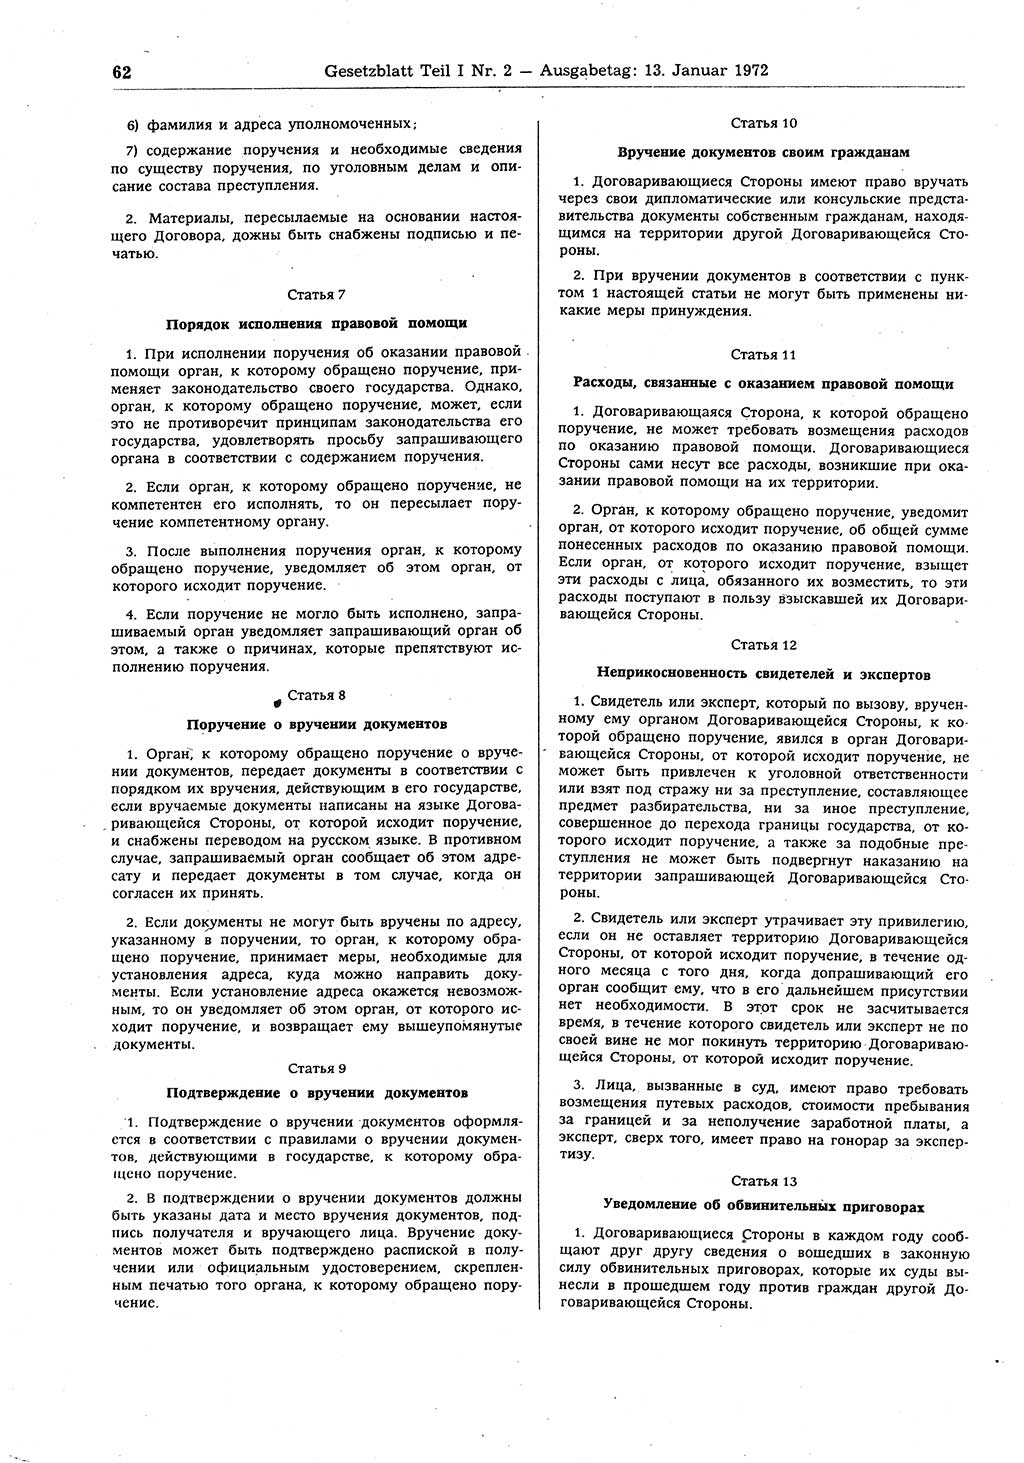 Gesetzblatt (GBl.) der Deutschen Demokratischen Republik (DDR) Teil Ⅰ 1972, Seite 62 (GBl. DDR Ⅰ 1972, S. 62)